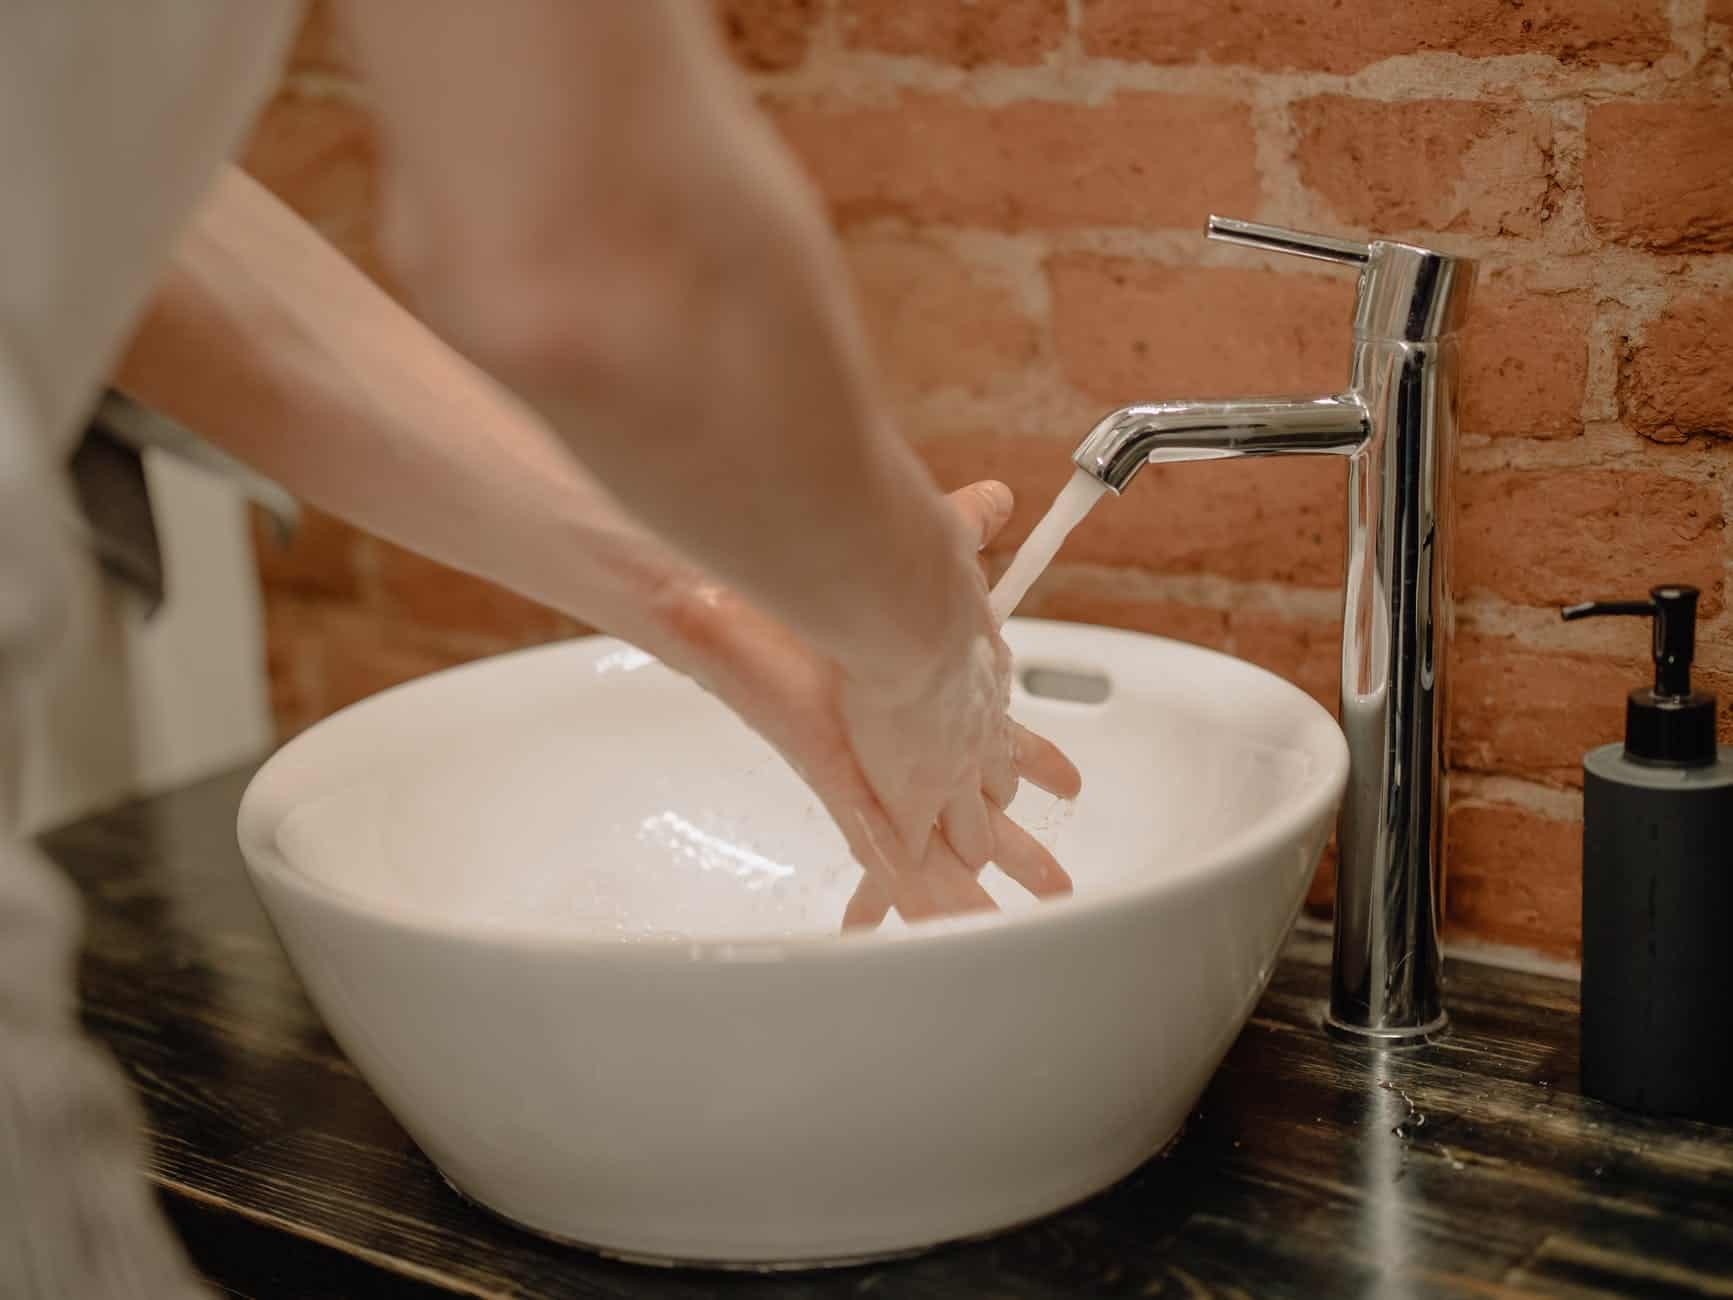 Internationale dag van het handen wassen | 15 oktober | inhakers